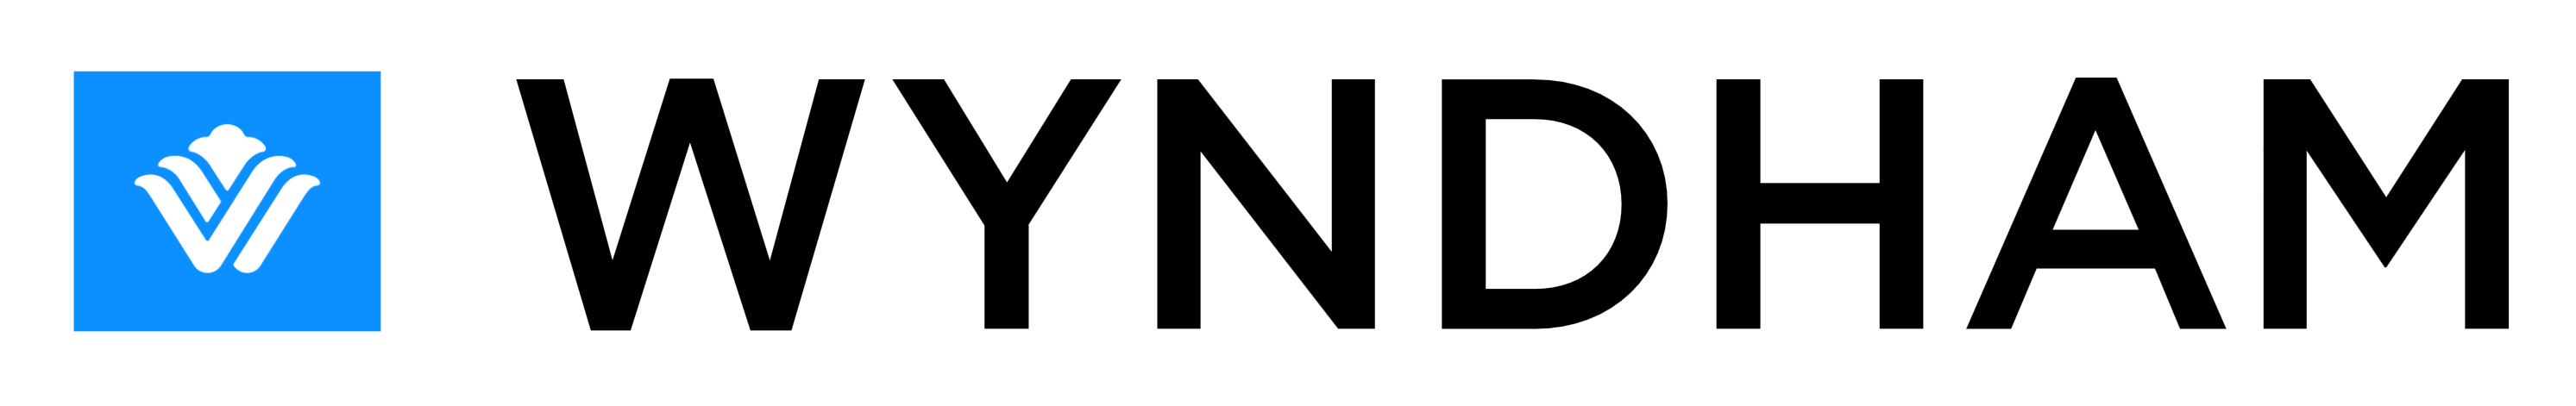 Wyndham logo, logotype